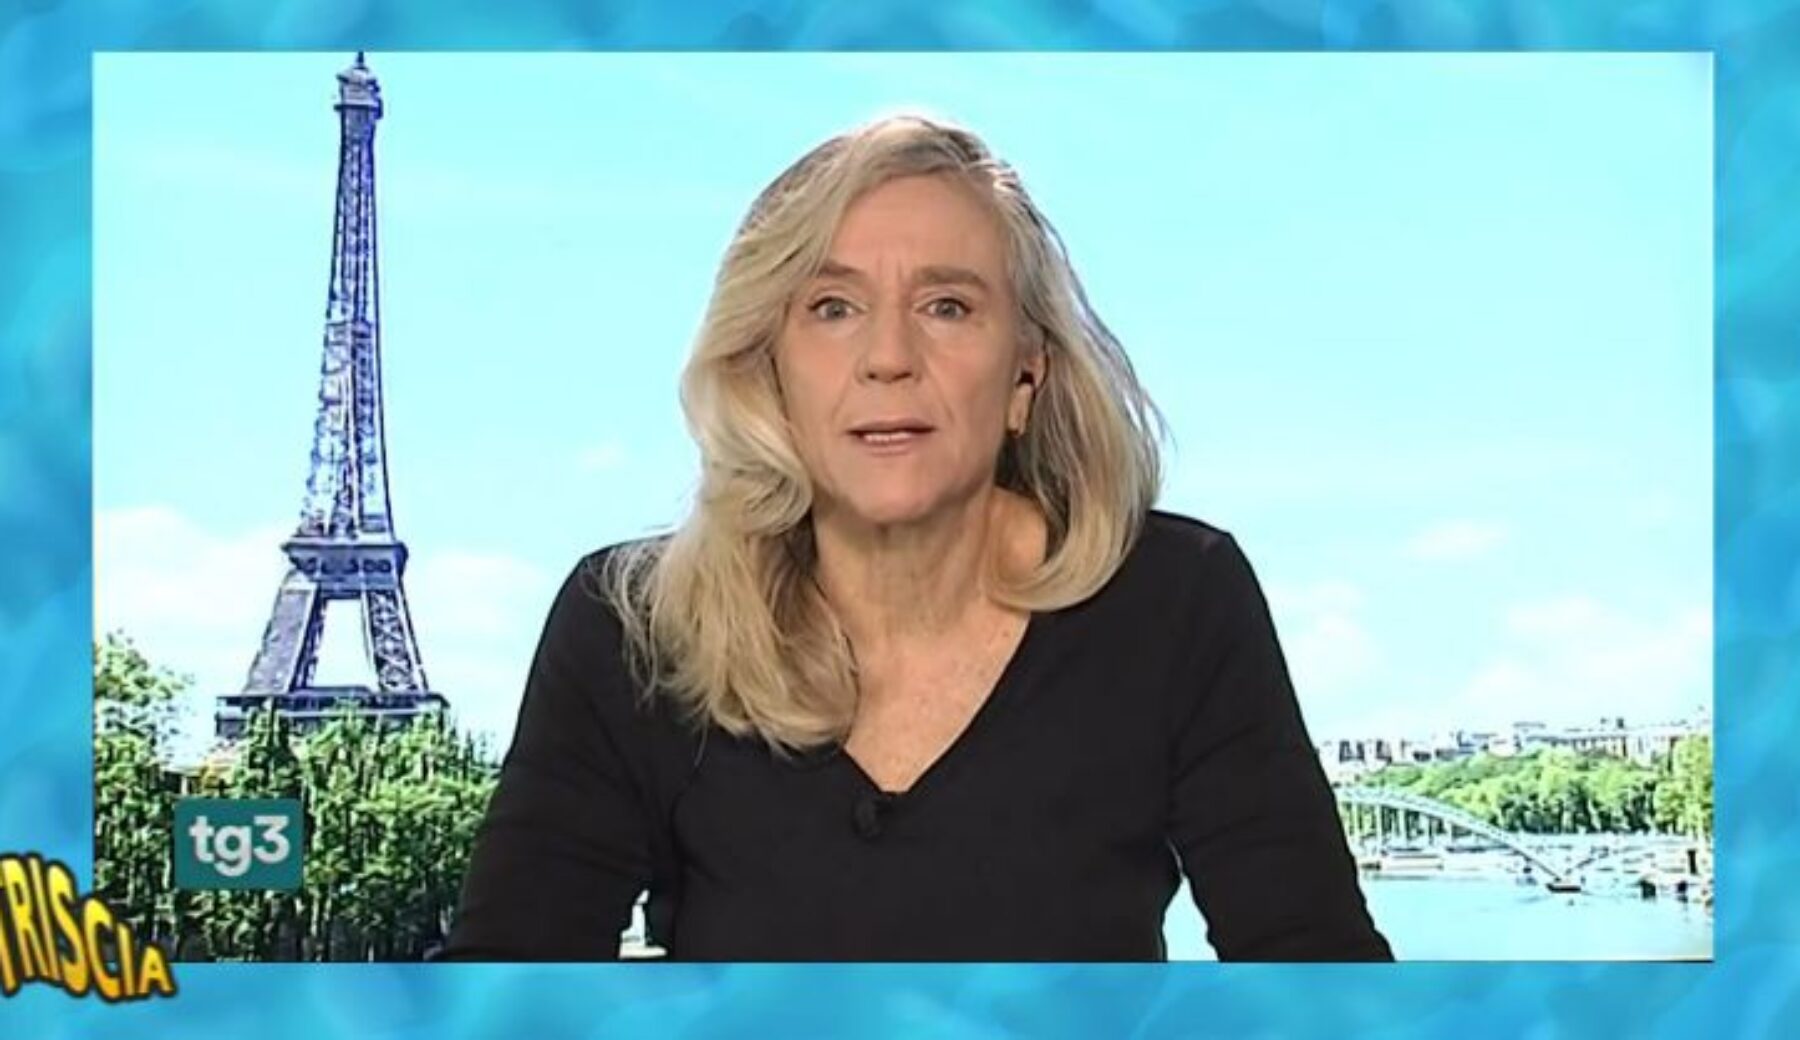 Stasera a “Rai Scoglio 24”, Giovanna Botteri: corrispondente Rai da tutti i posti in cui si parla francese?